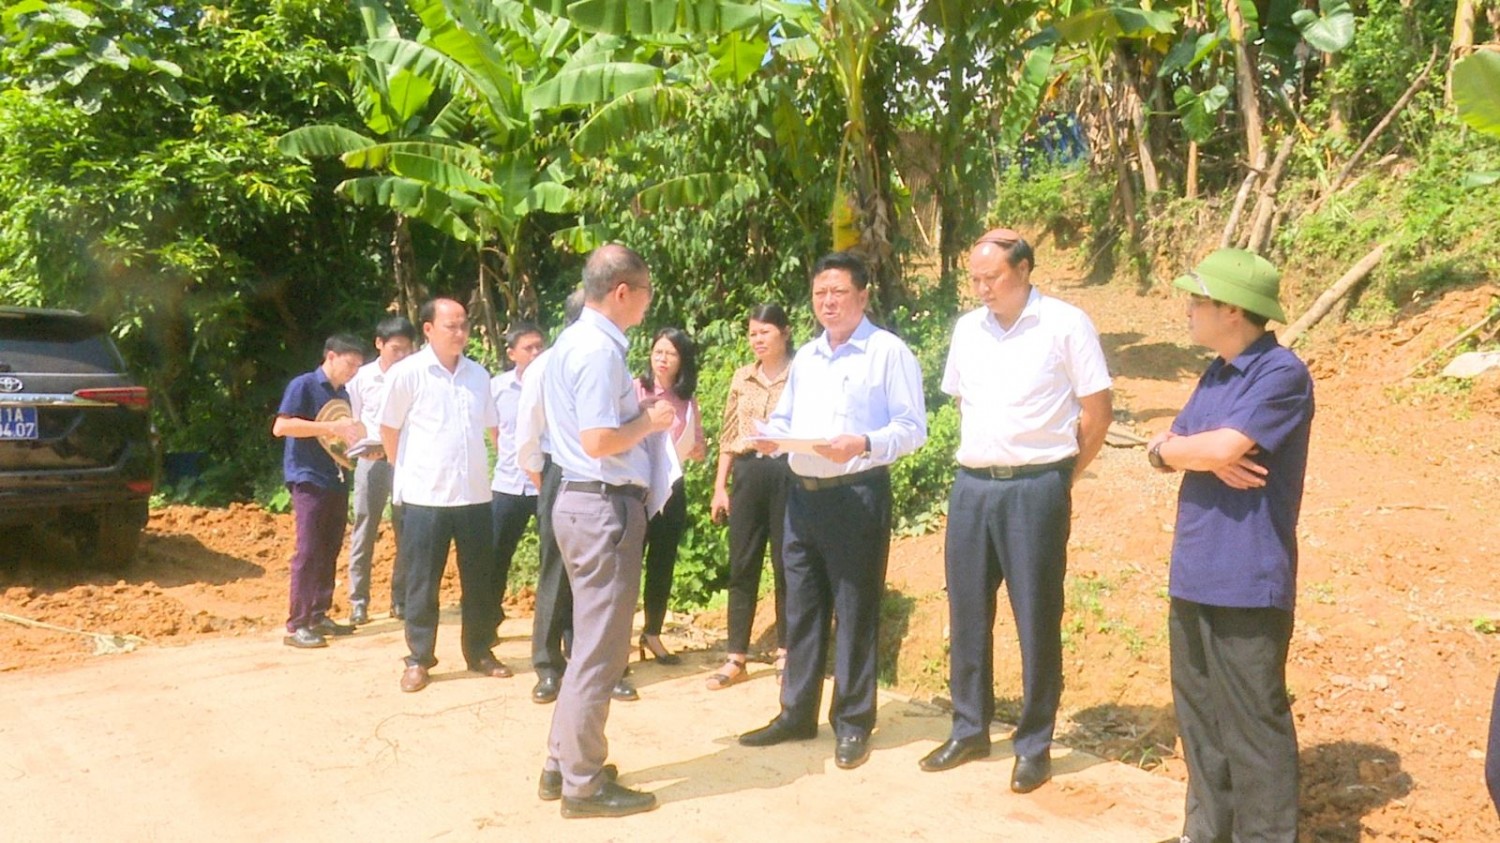 Bí thư Tỉnh ủy Trần Hồng Minh và đoàn công tác kiểm tra thực địa Dự án cải tạo, nâng cấp đường quốc lộ 34 - Nà Nọi 2, xã Minh Tâm.